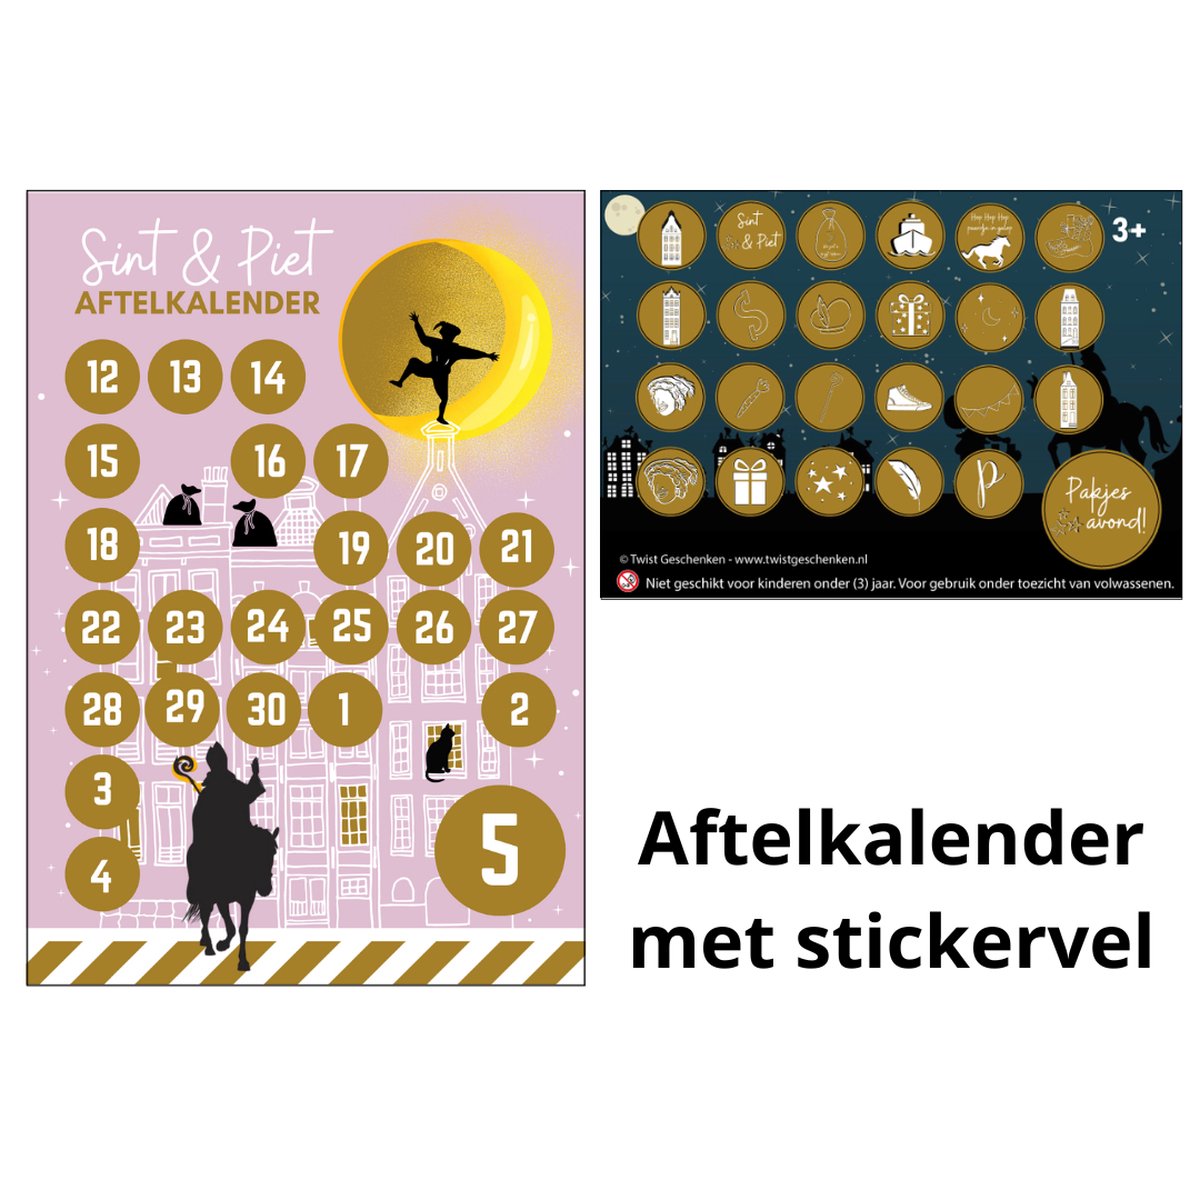 Sinterklaas aftelkalender met stickervel - sinterklaas - aftelkalender meisje - aftelkalender - schoentje zetten - sinterklaas kalender